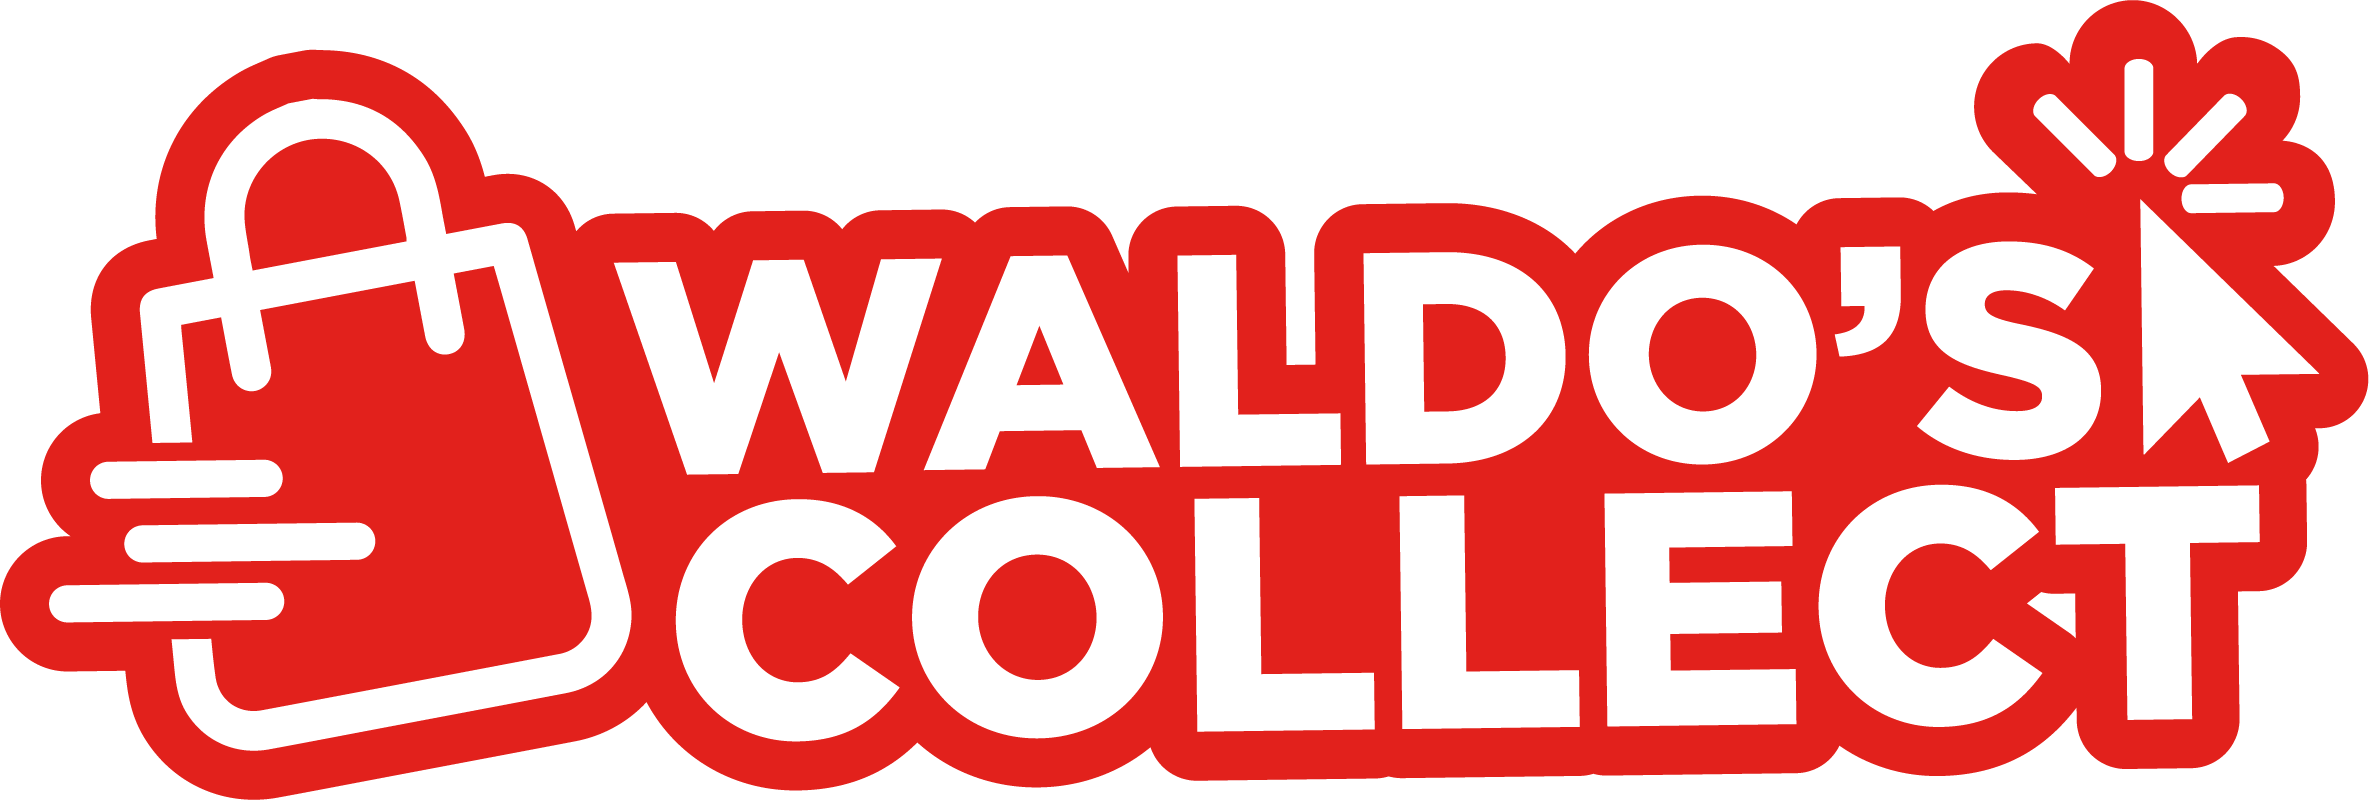 LogoWaldosCollect (1) (1).png__PID:78846298-1de0-439c-9c19-9025eee24db1